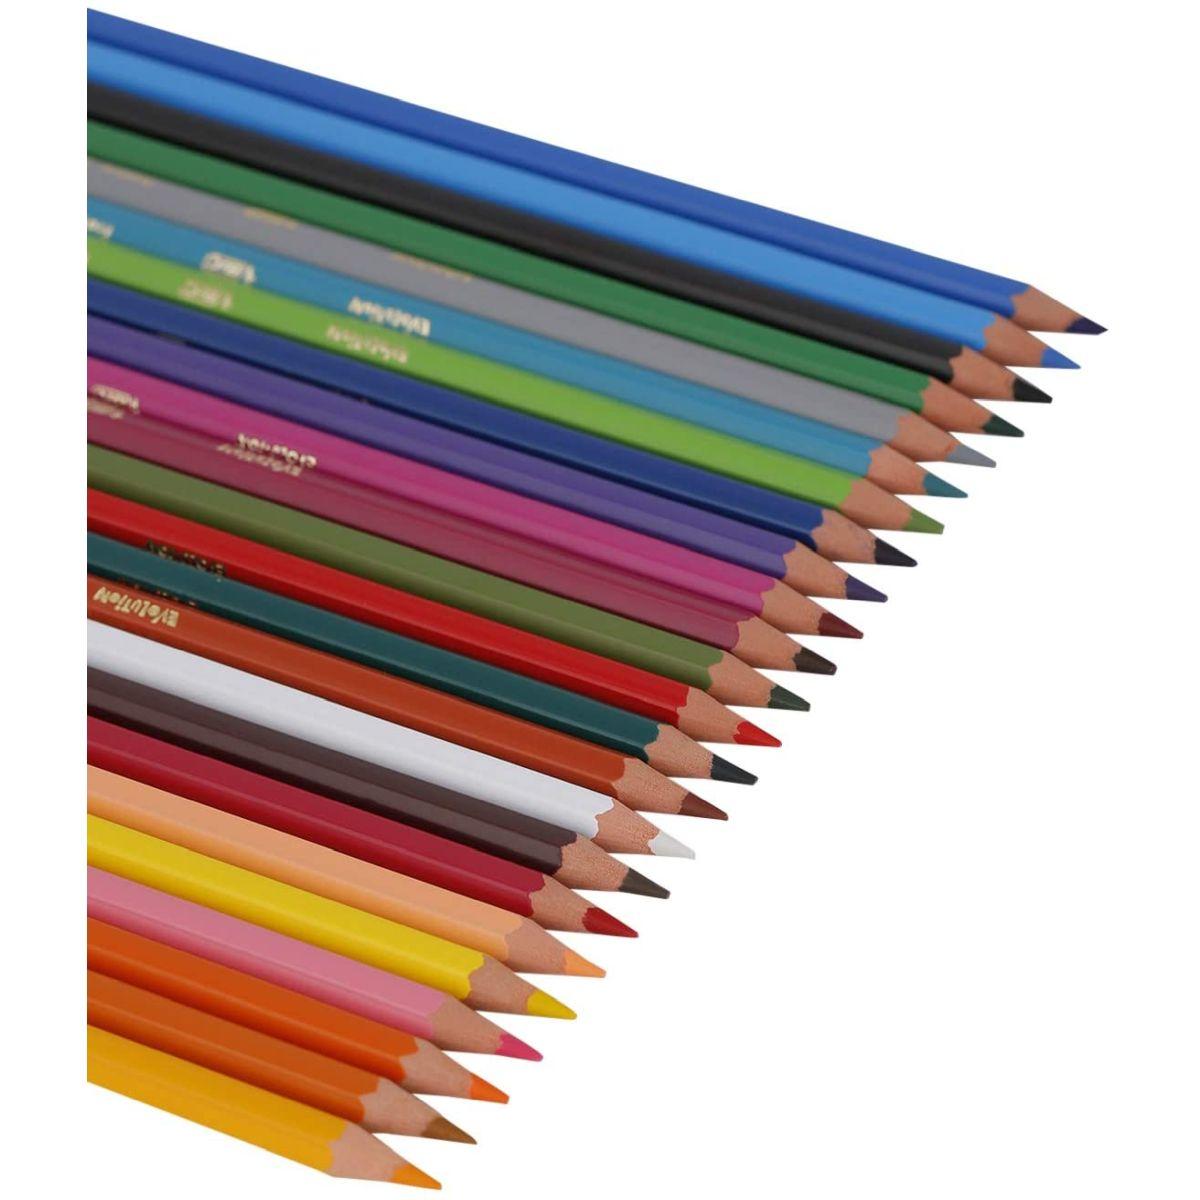 Bic kids evolution ecolutions - matite colorate in resina senza legno - confezione da 24 matite - diametro punta 3,20 mm